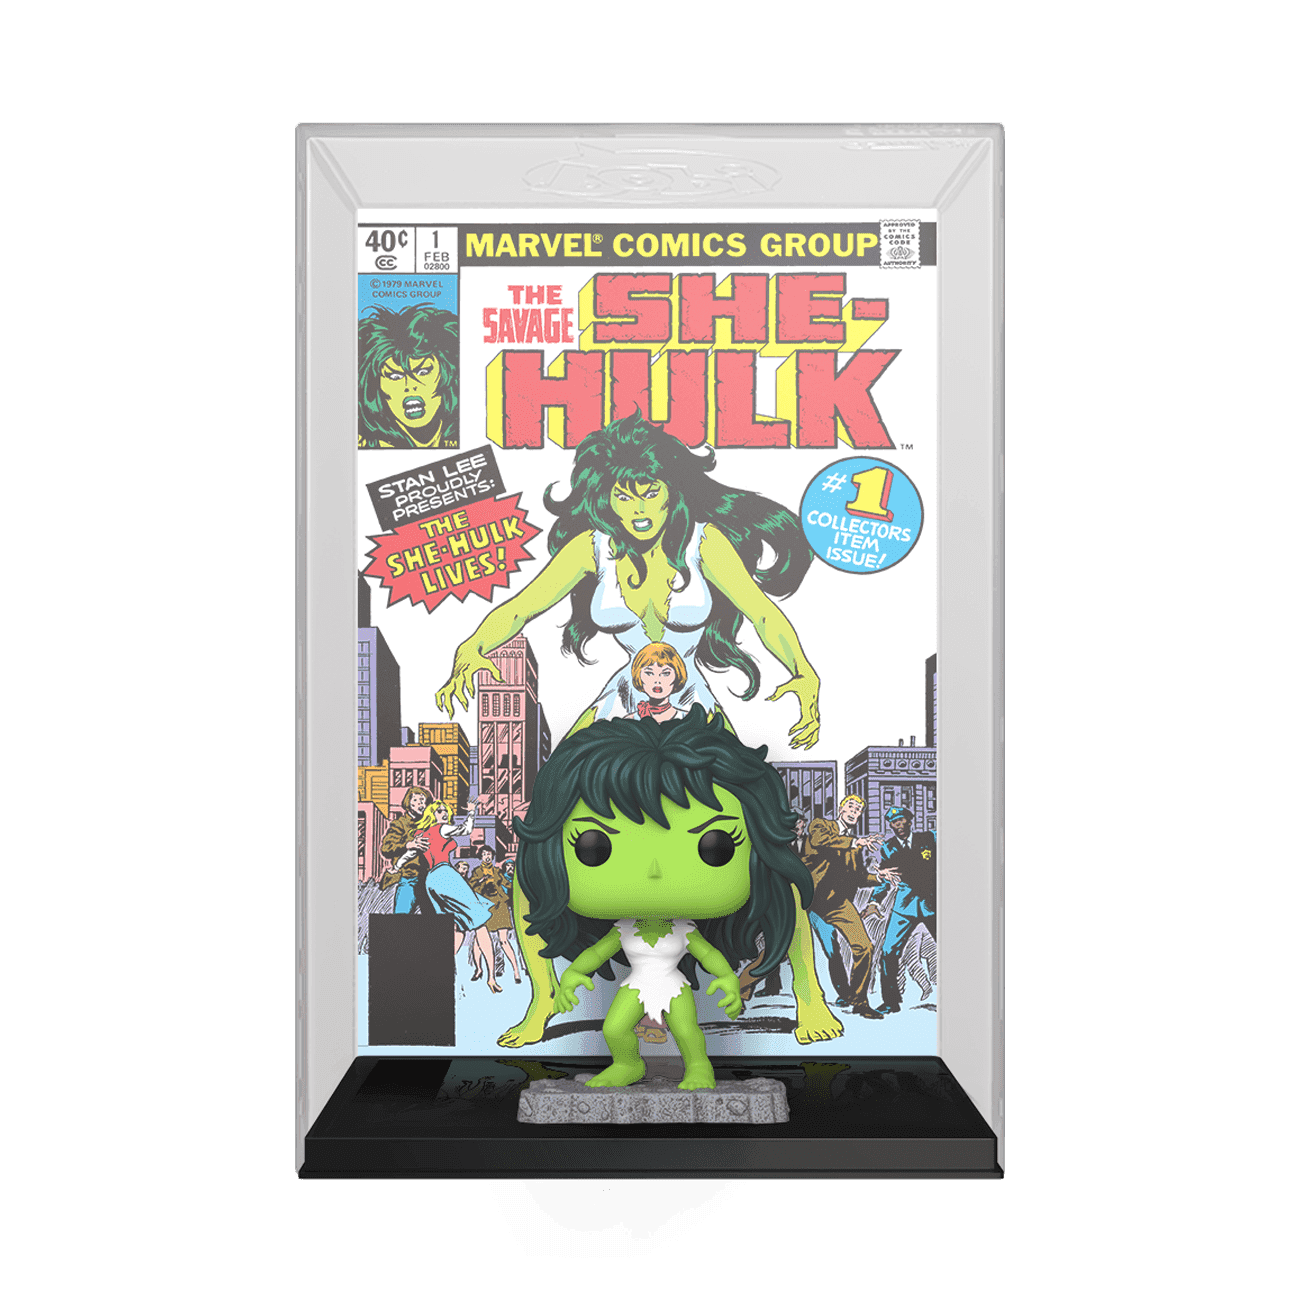 image de She-Hulk